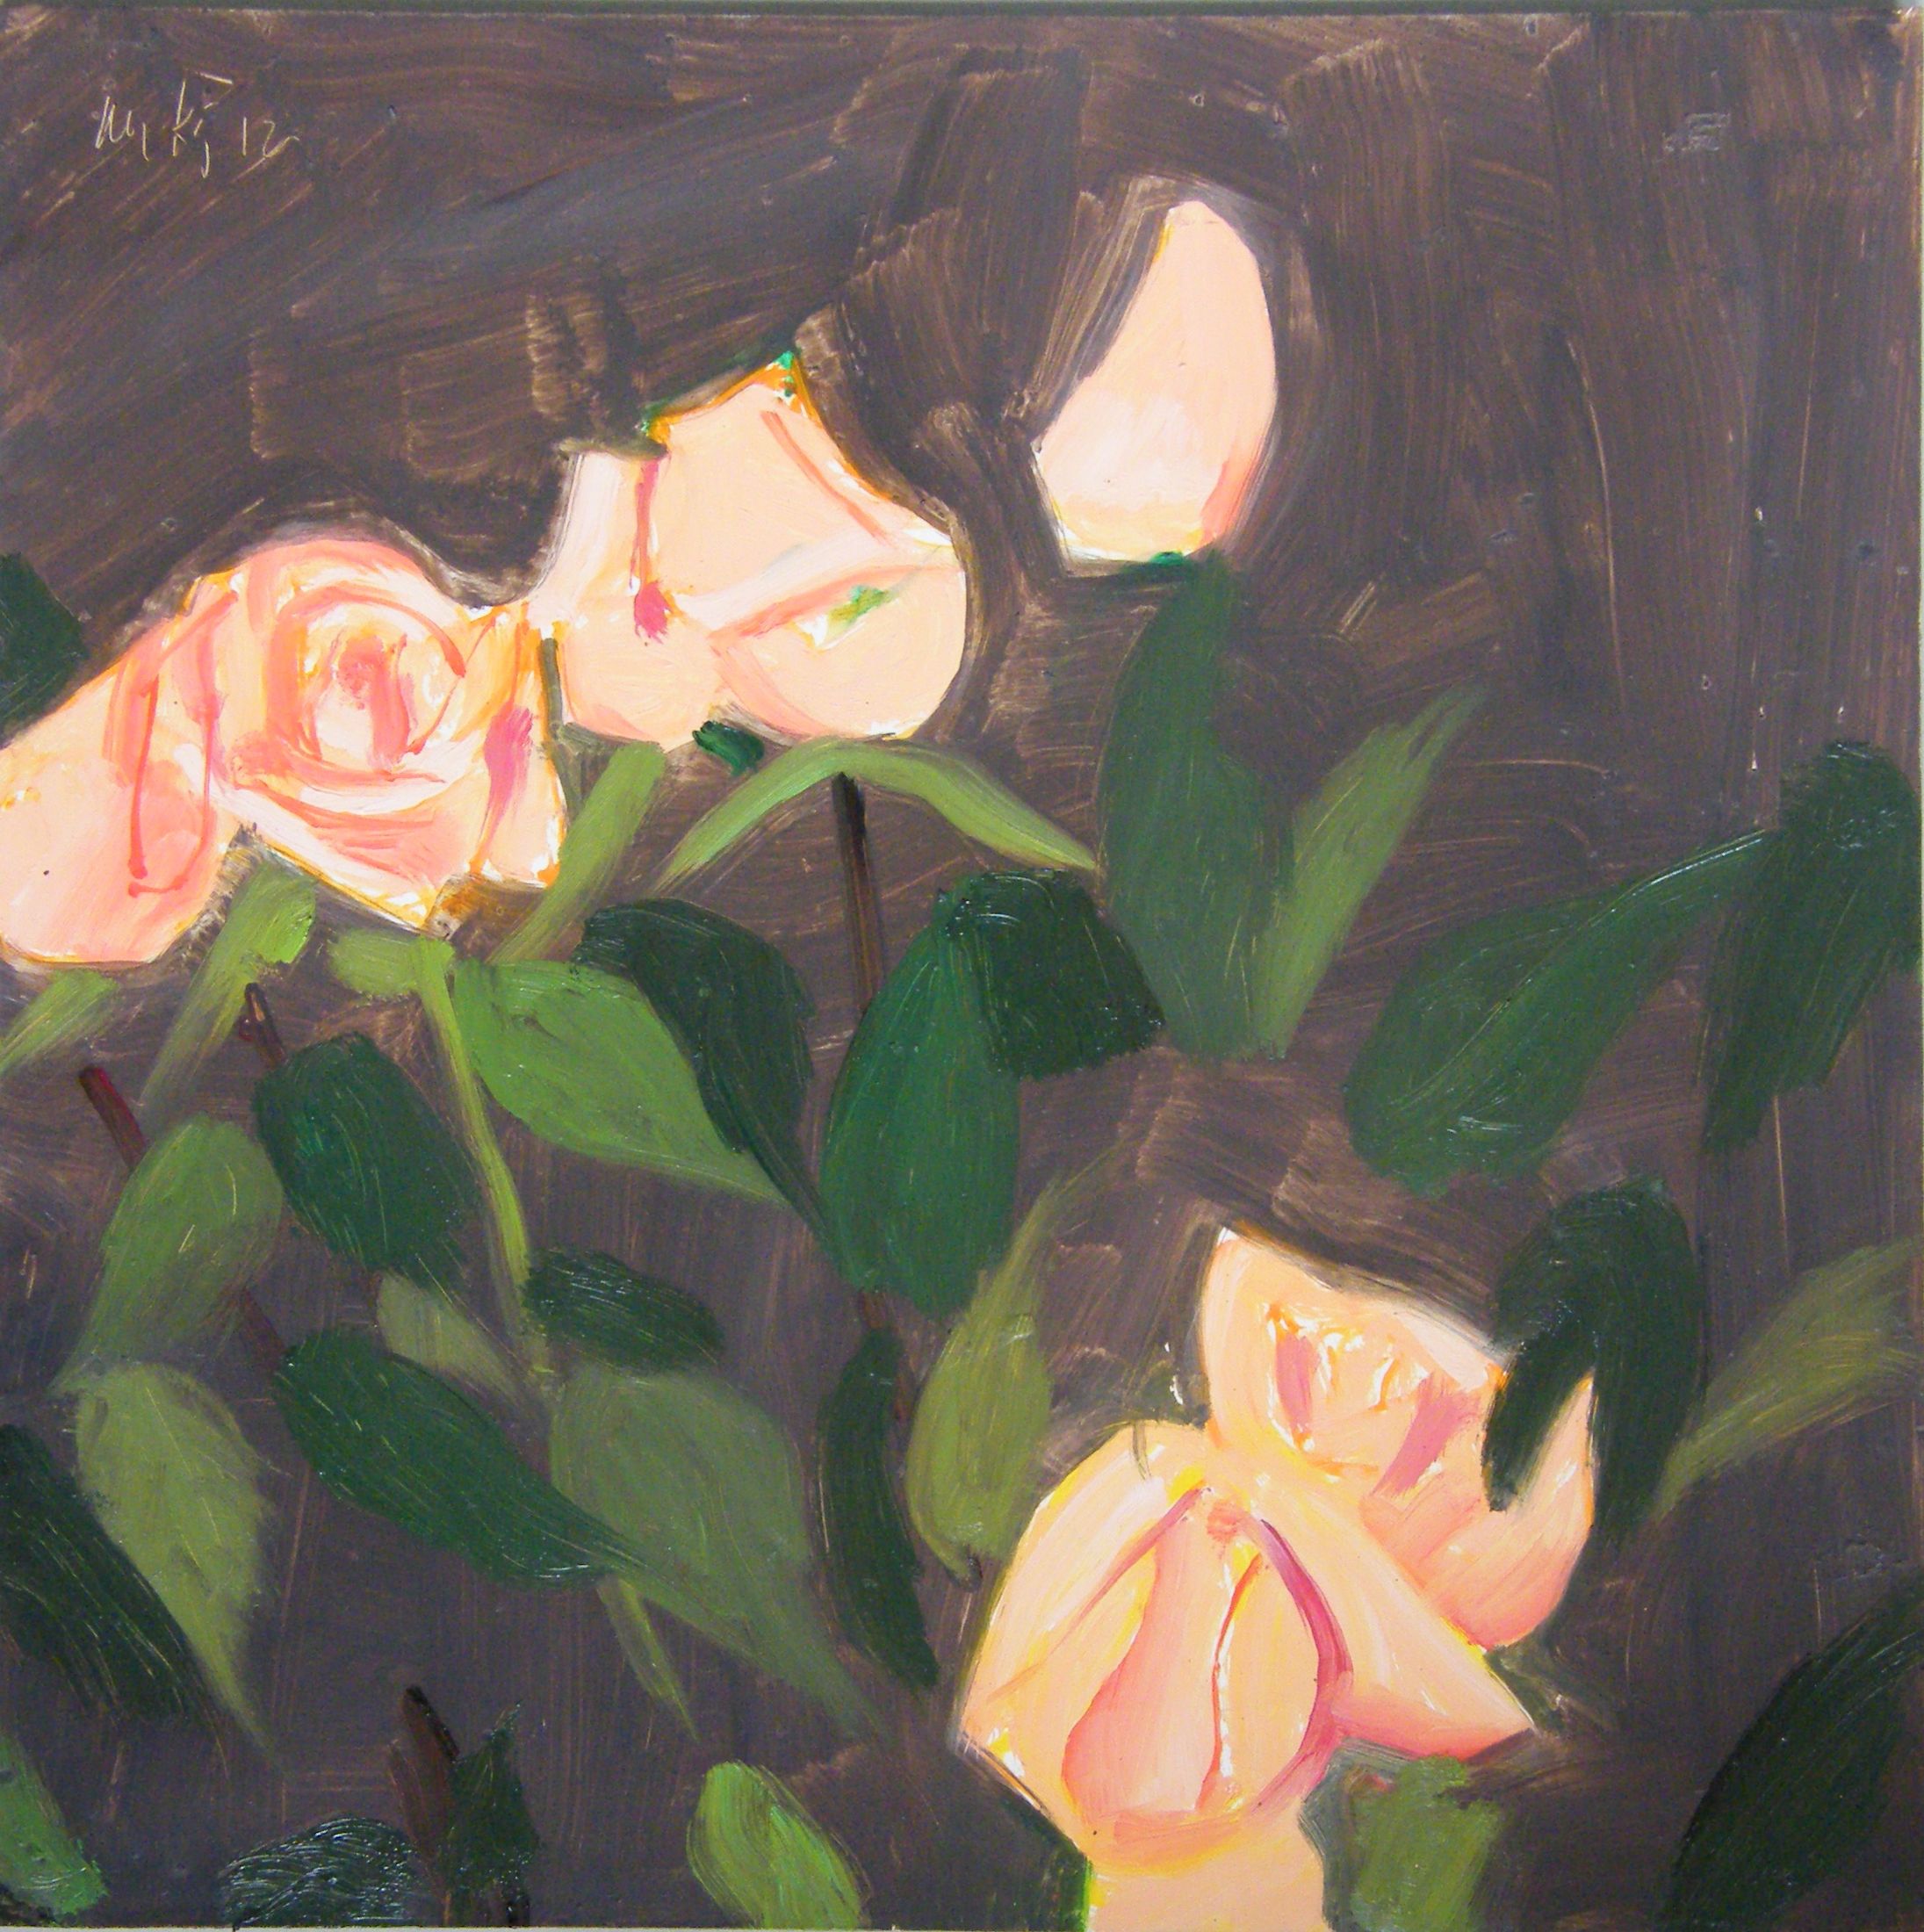  Pink Roses 2 (study), Alex Katz